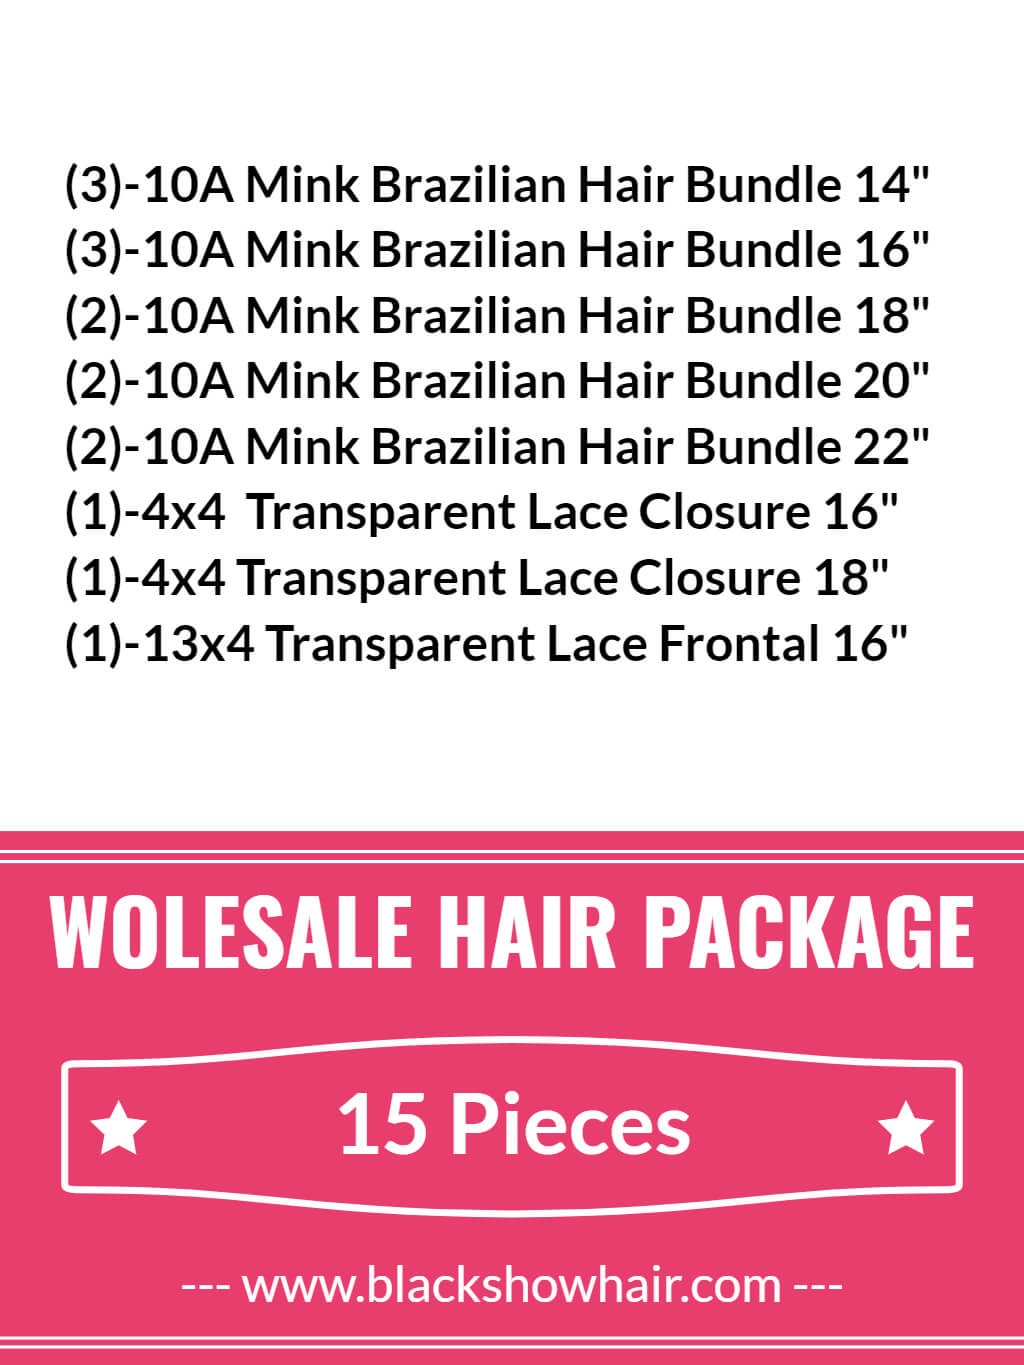 Wholesale Hair Bundles 100% Virgin Human Hair - Black Show Hair